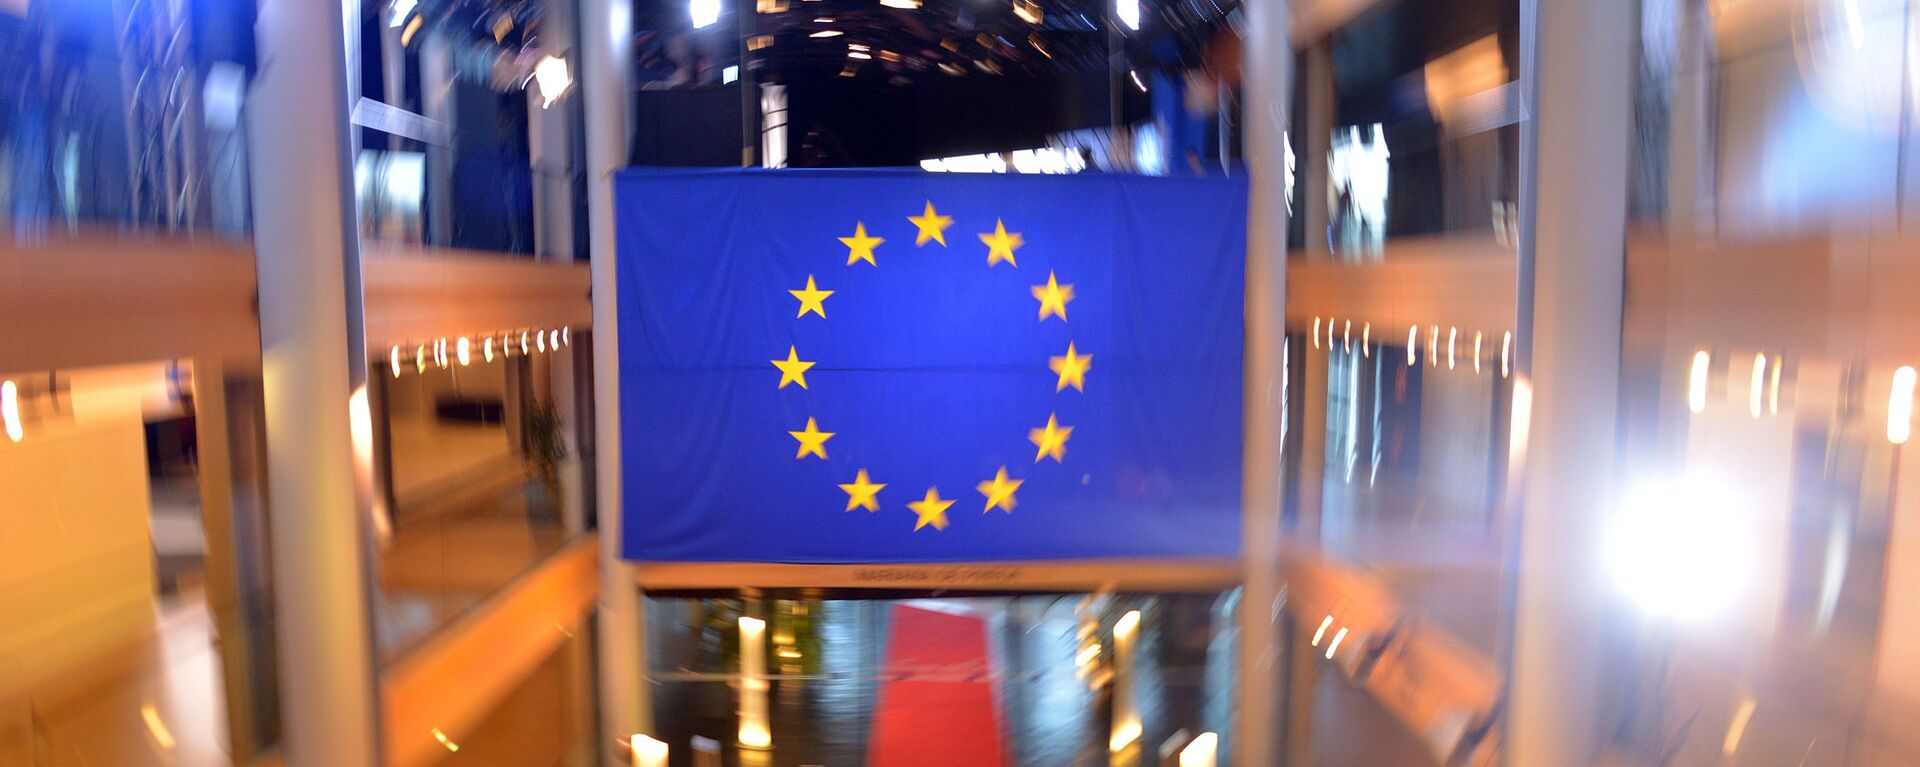 Флаг Евросоюза в главном здании Совета Европы в Страсбурге. Архивное фото - Sputnik Кыргызстан, 1920, 02.03.2021